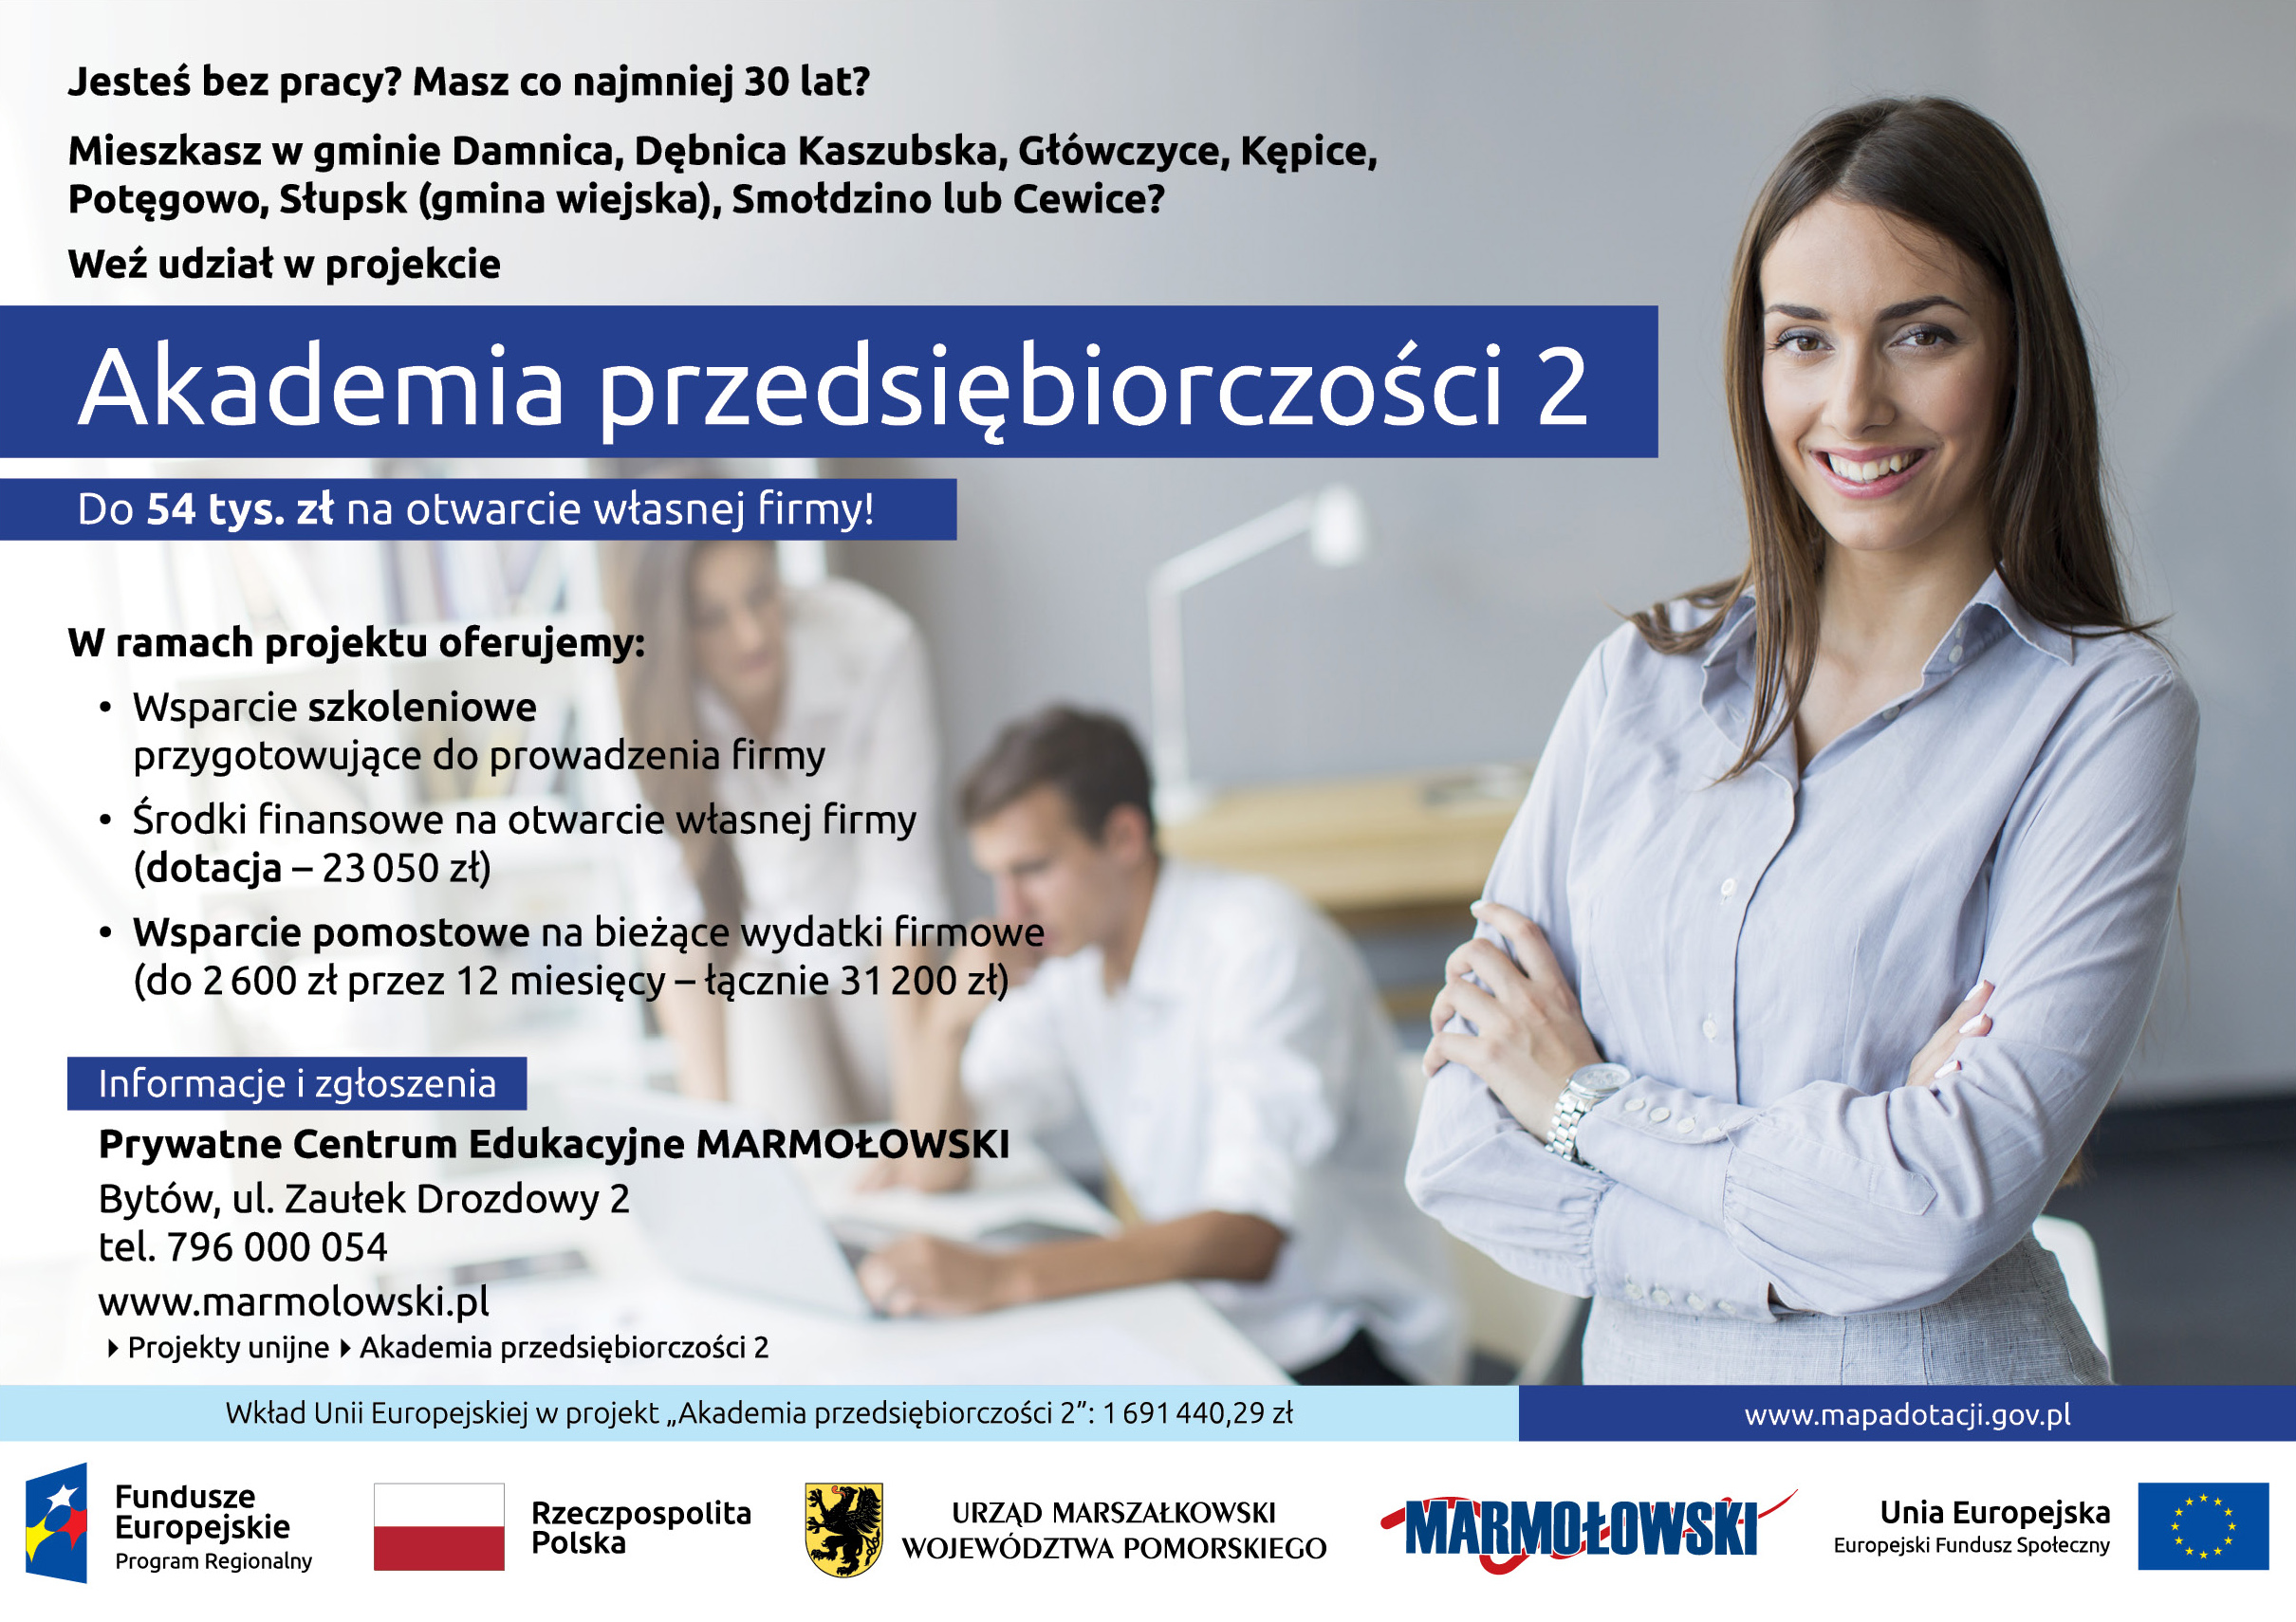 Plakat informujący i zapraszający do udziału w projekcie Akademia przedsiębiorczości 2